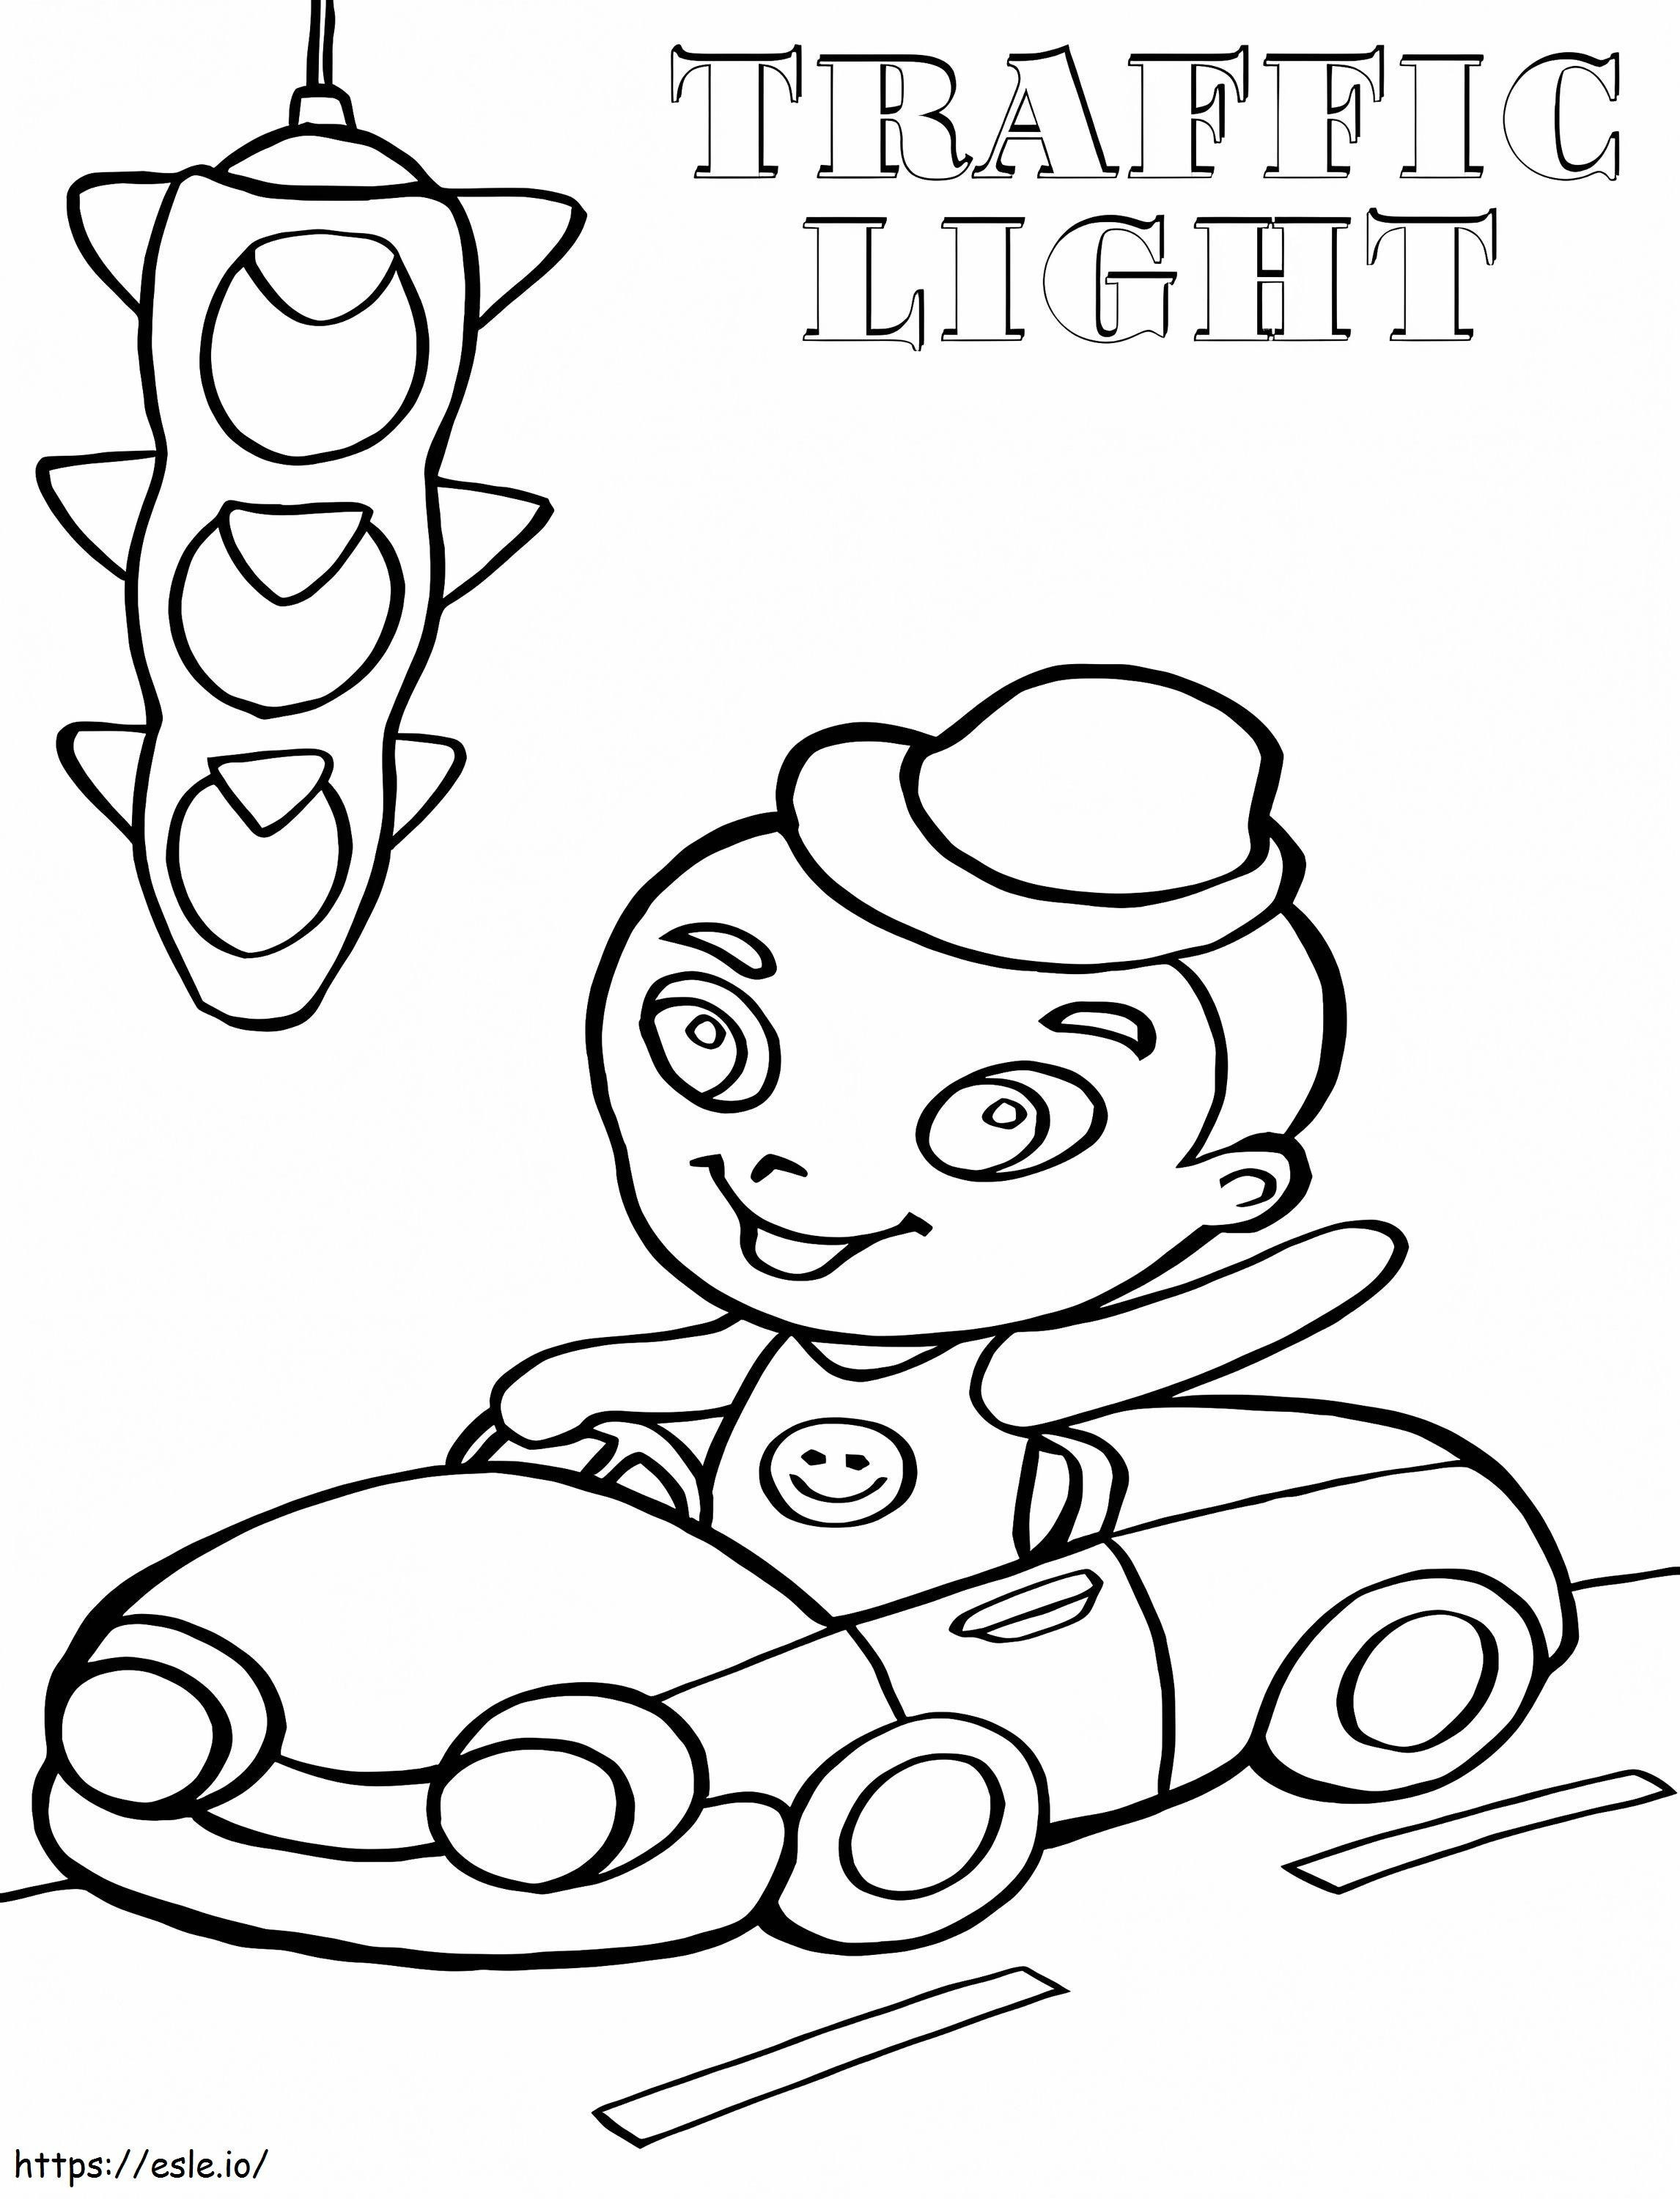 Chłopiec prowadzący samochód i sygnalizację świetlną kolorowanka